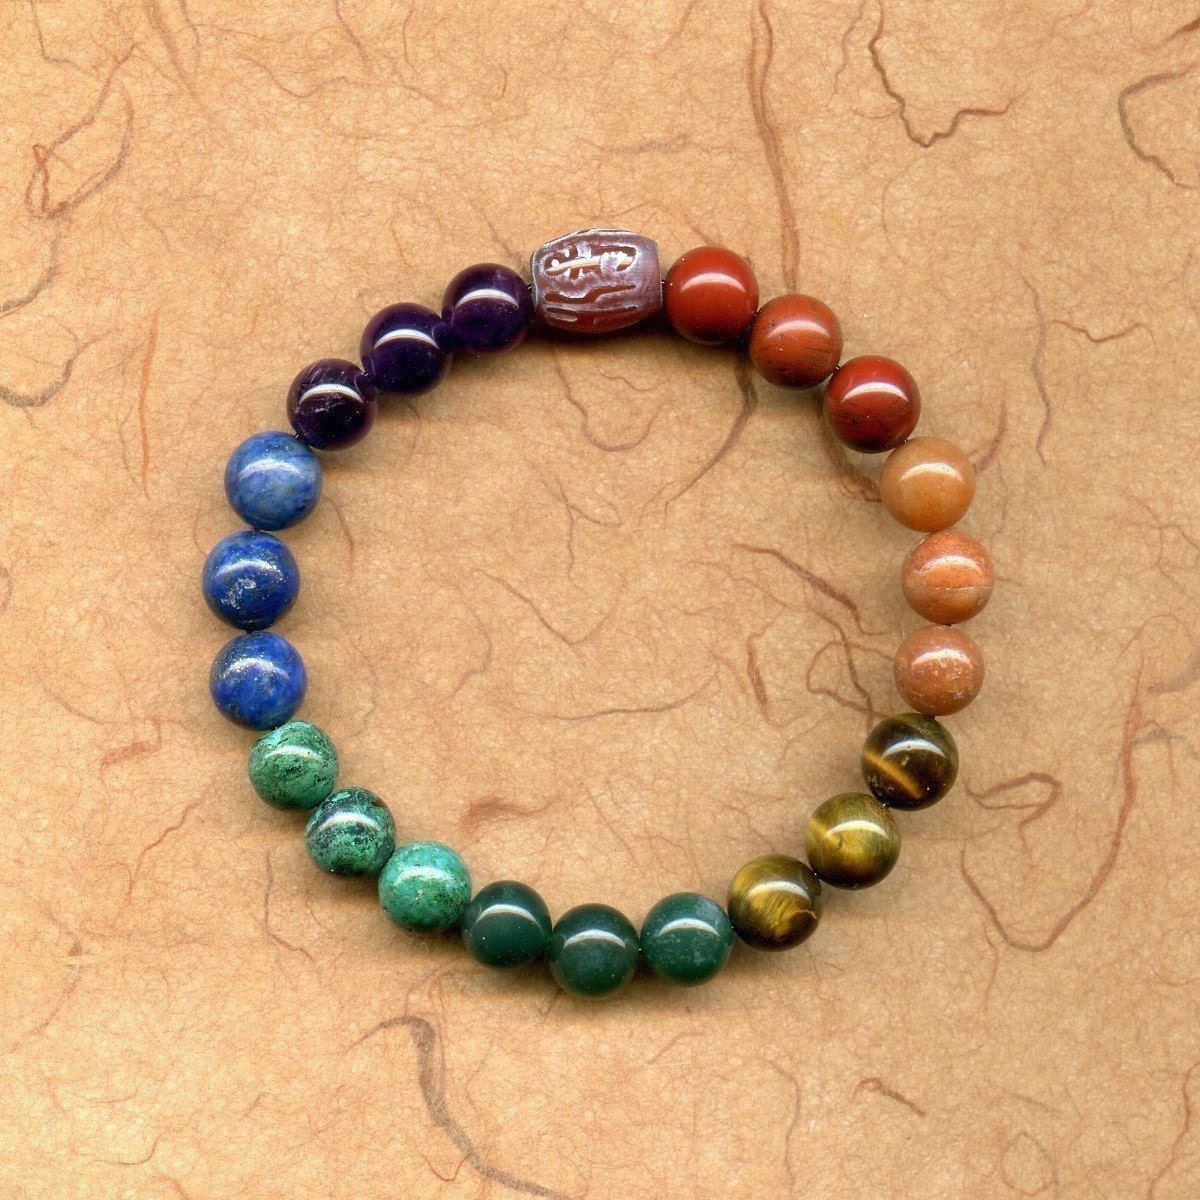 Heal 7 chakra meditation bead bracelet mala with mantra bead